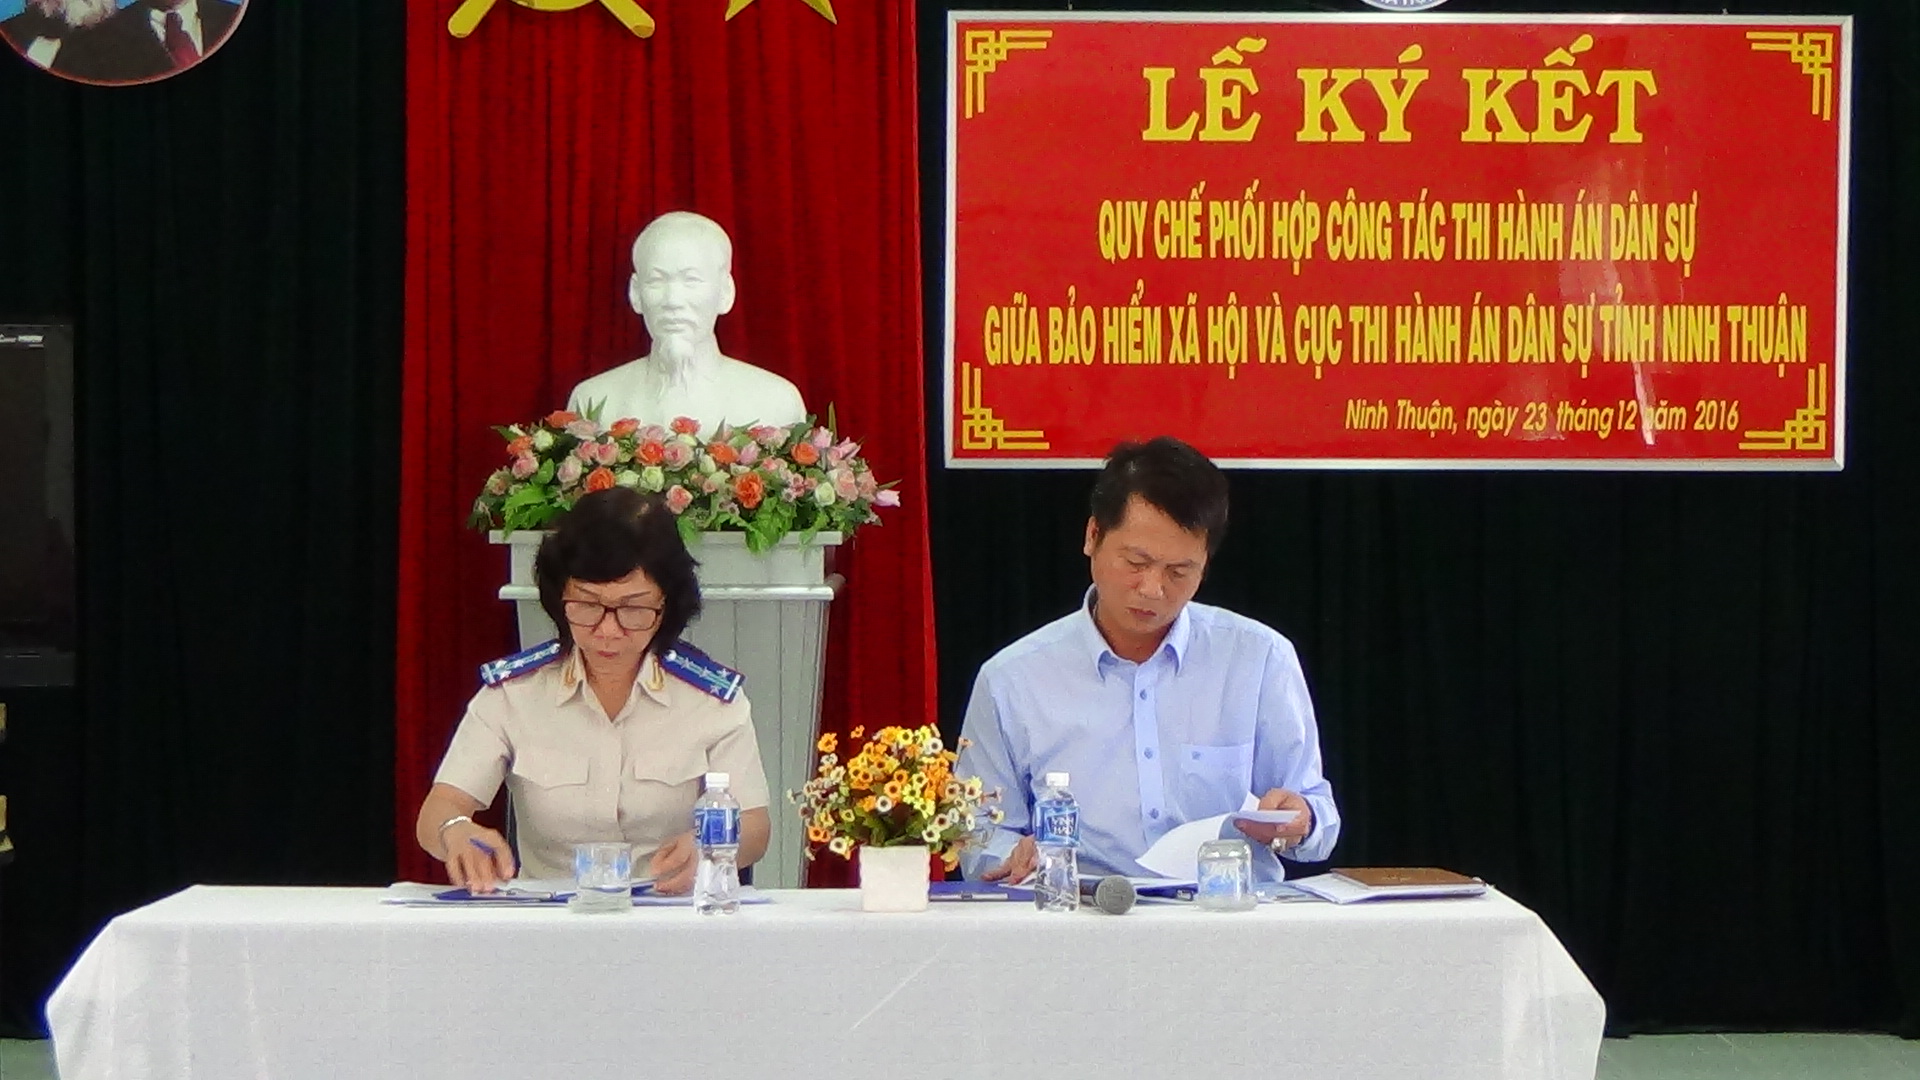 Bảo hiểm xã hội và Cục Thi hành án dân sự tỉnh Ninh Thuận tổ chức Lễ ký kết Quy chế phối hợp trong công tác thi hành án dân sự